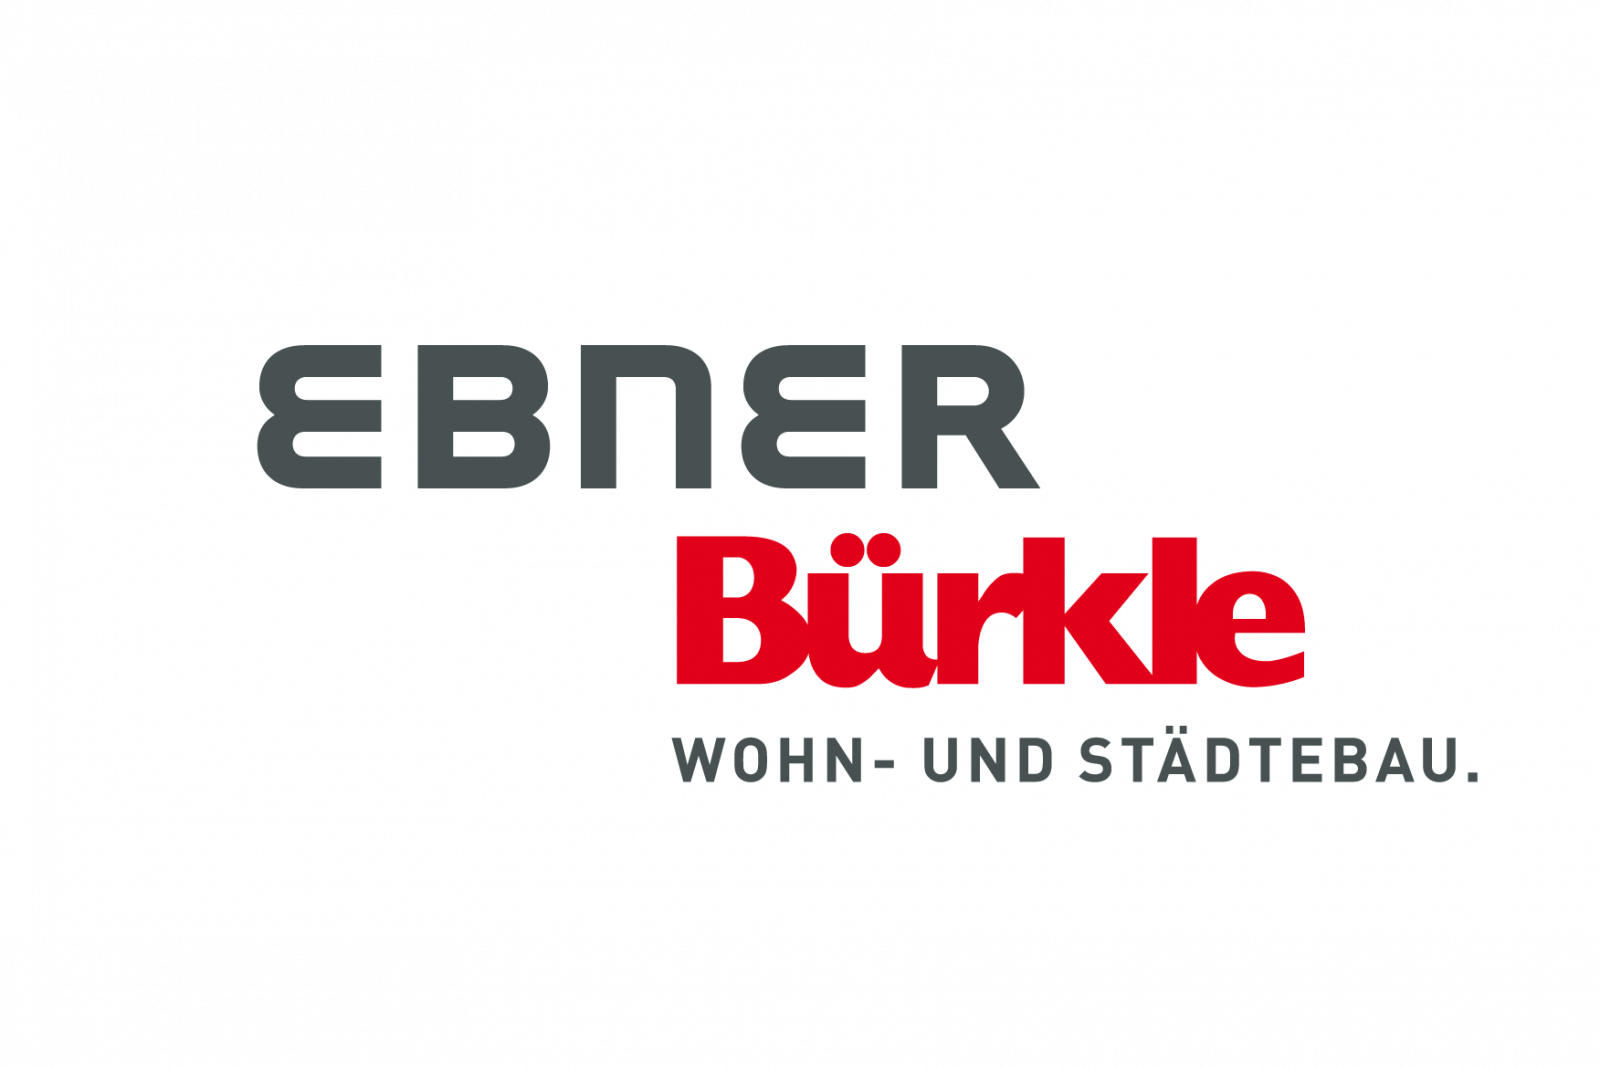 Modernes Logo in Grau und Rot für den Bauträger Ebner & Bürkle Wohn- und Städtebau. Die Wort-Bildmarke verkörpert zeitgemäßes Bauen und Wohnen. Erfahren Sie mehr über den Bauträger: https://www.ebner-unternehmen.de/ebner-buerkle